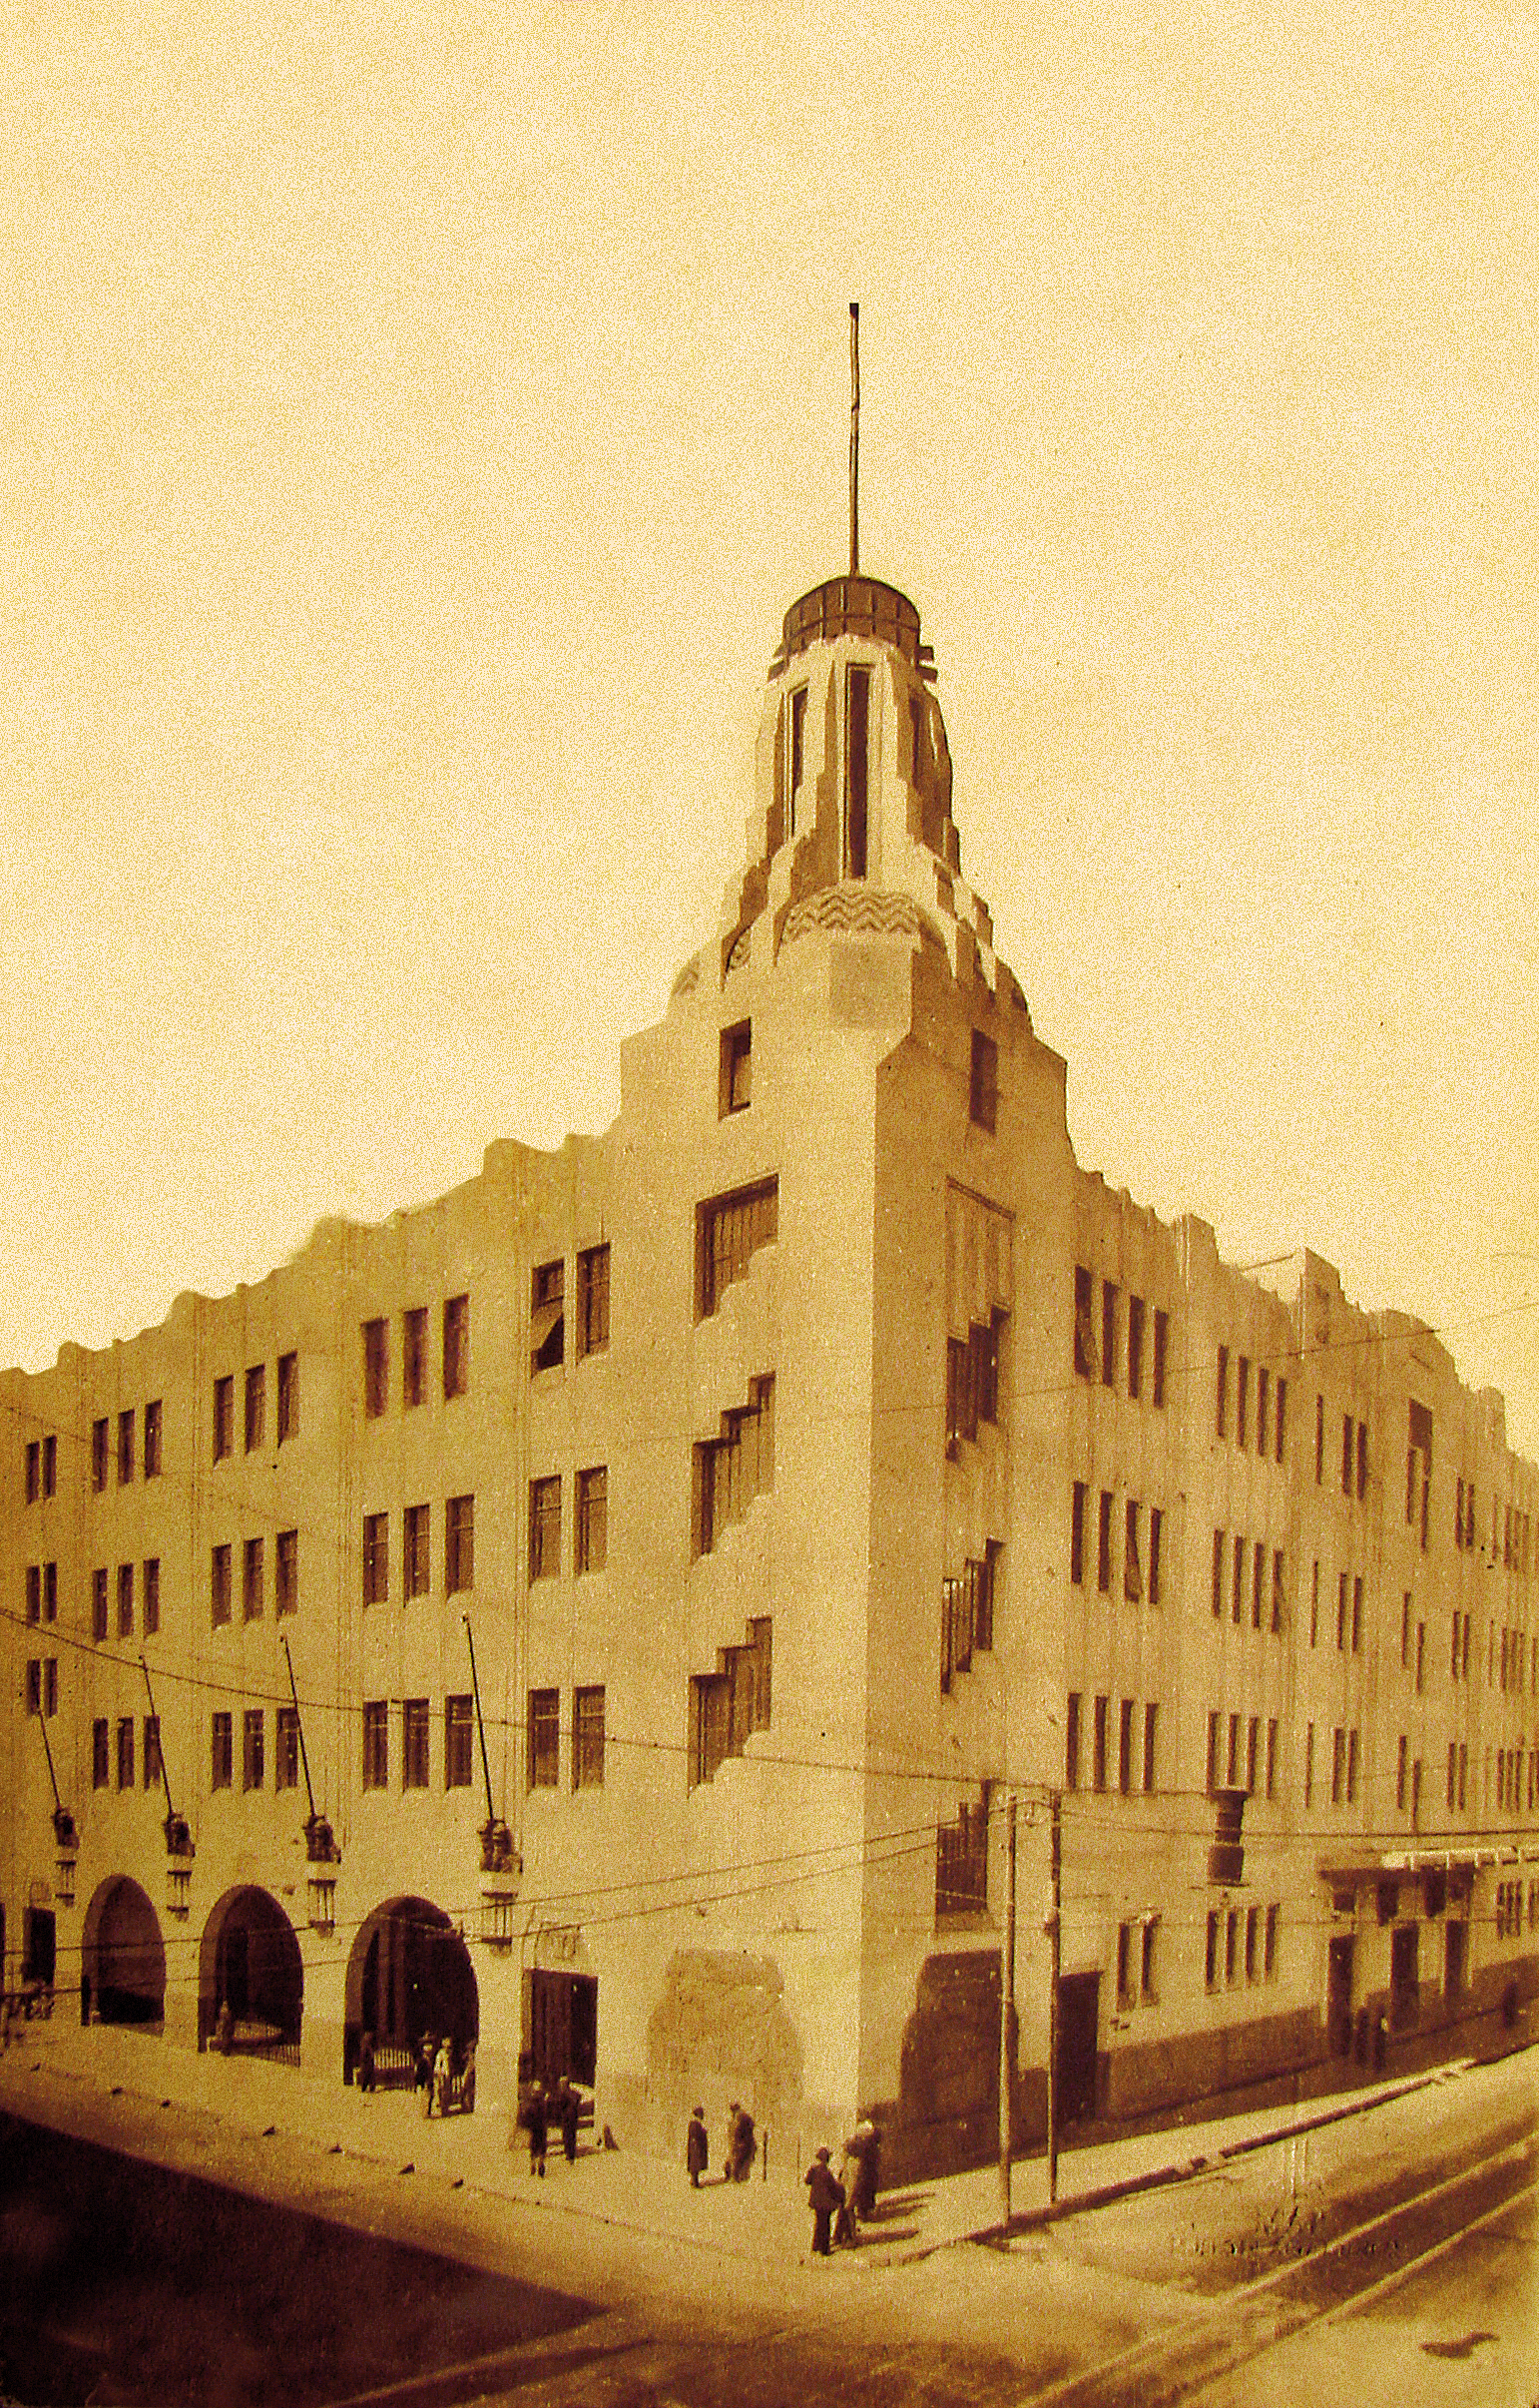 Edificio art decó construido por el Arq. Vicente Mendiola en 1928 para Inspección General de Policía y Cuartel Central de Bomberos.